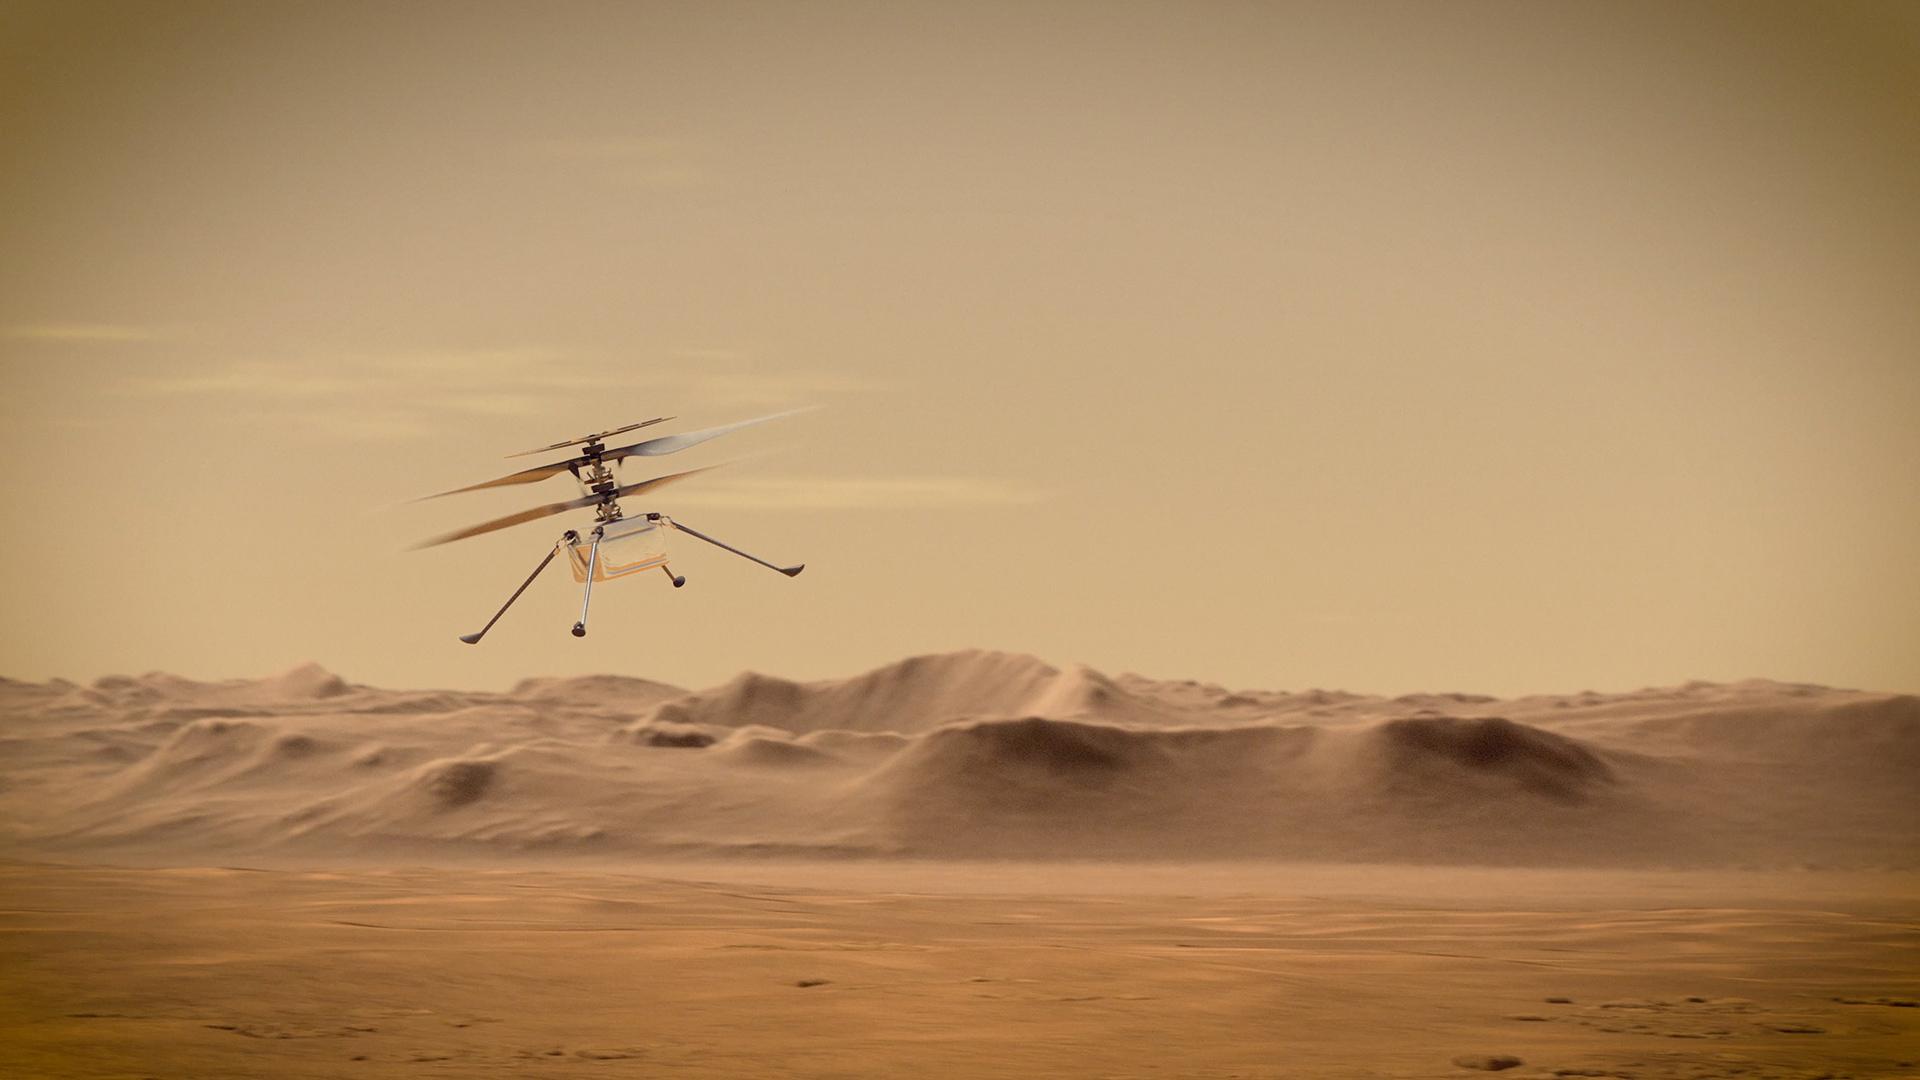 Marsjański dron Ingenuity wspina się na rekordową wysokość podczas swojego 35. lotu